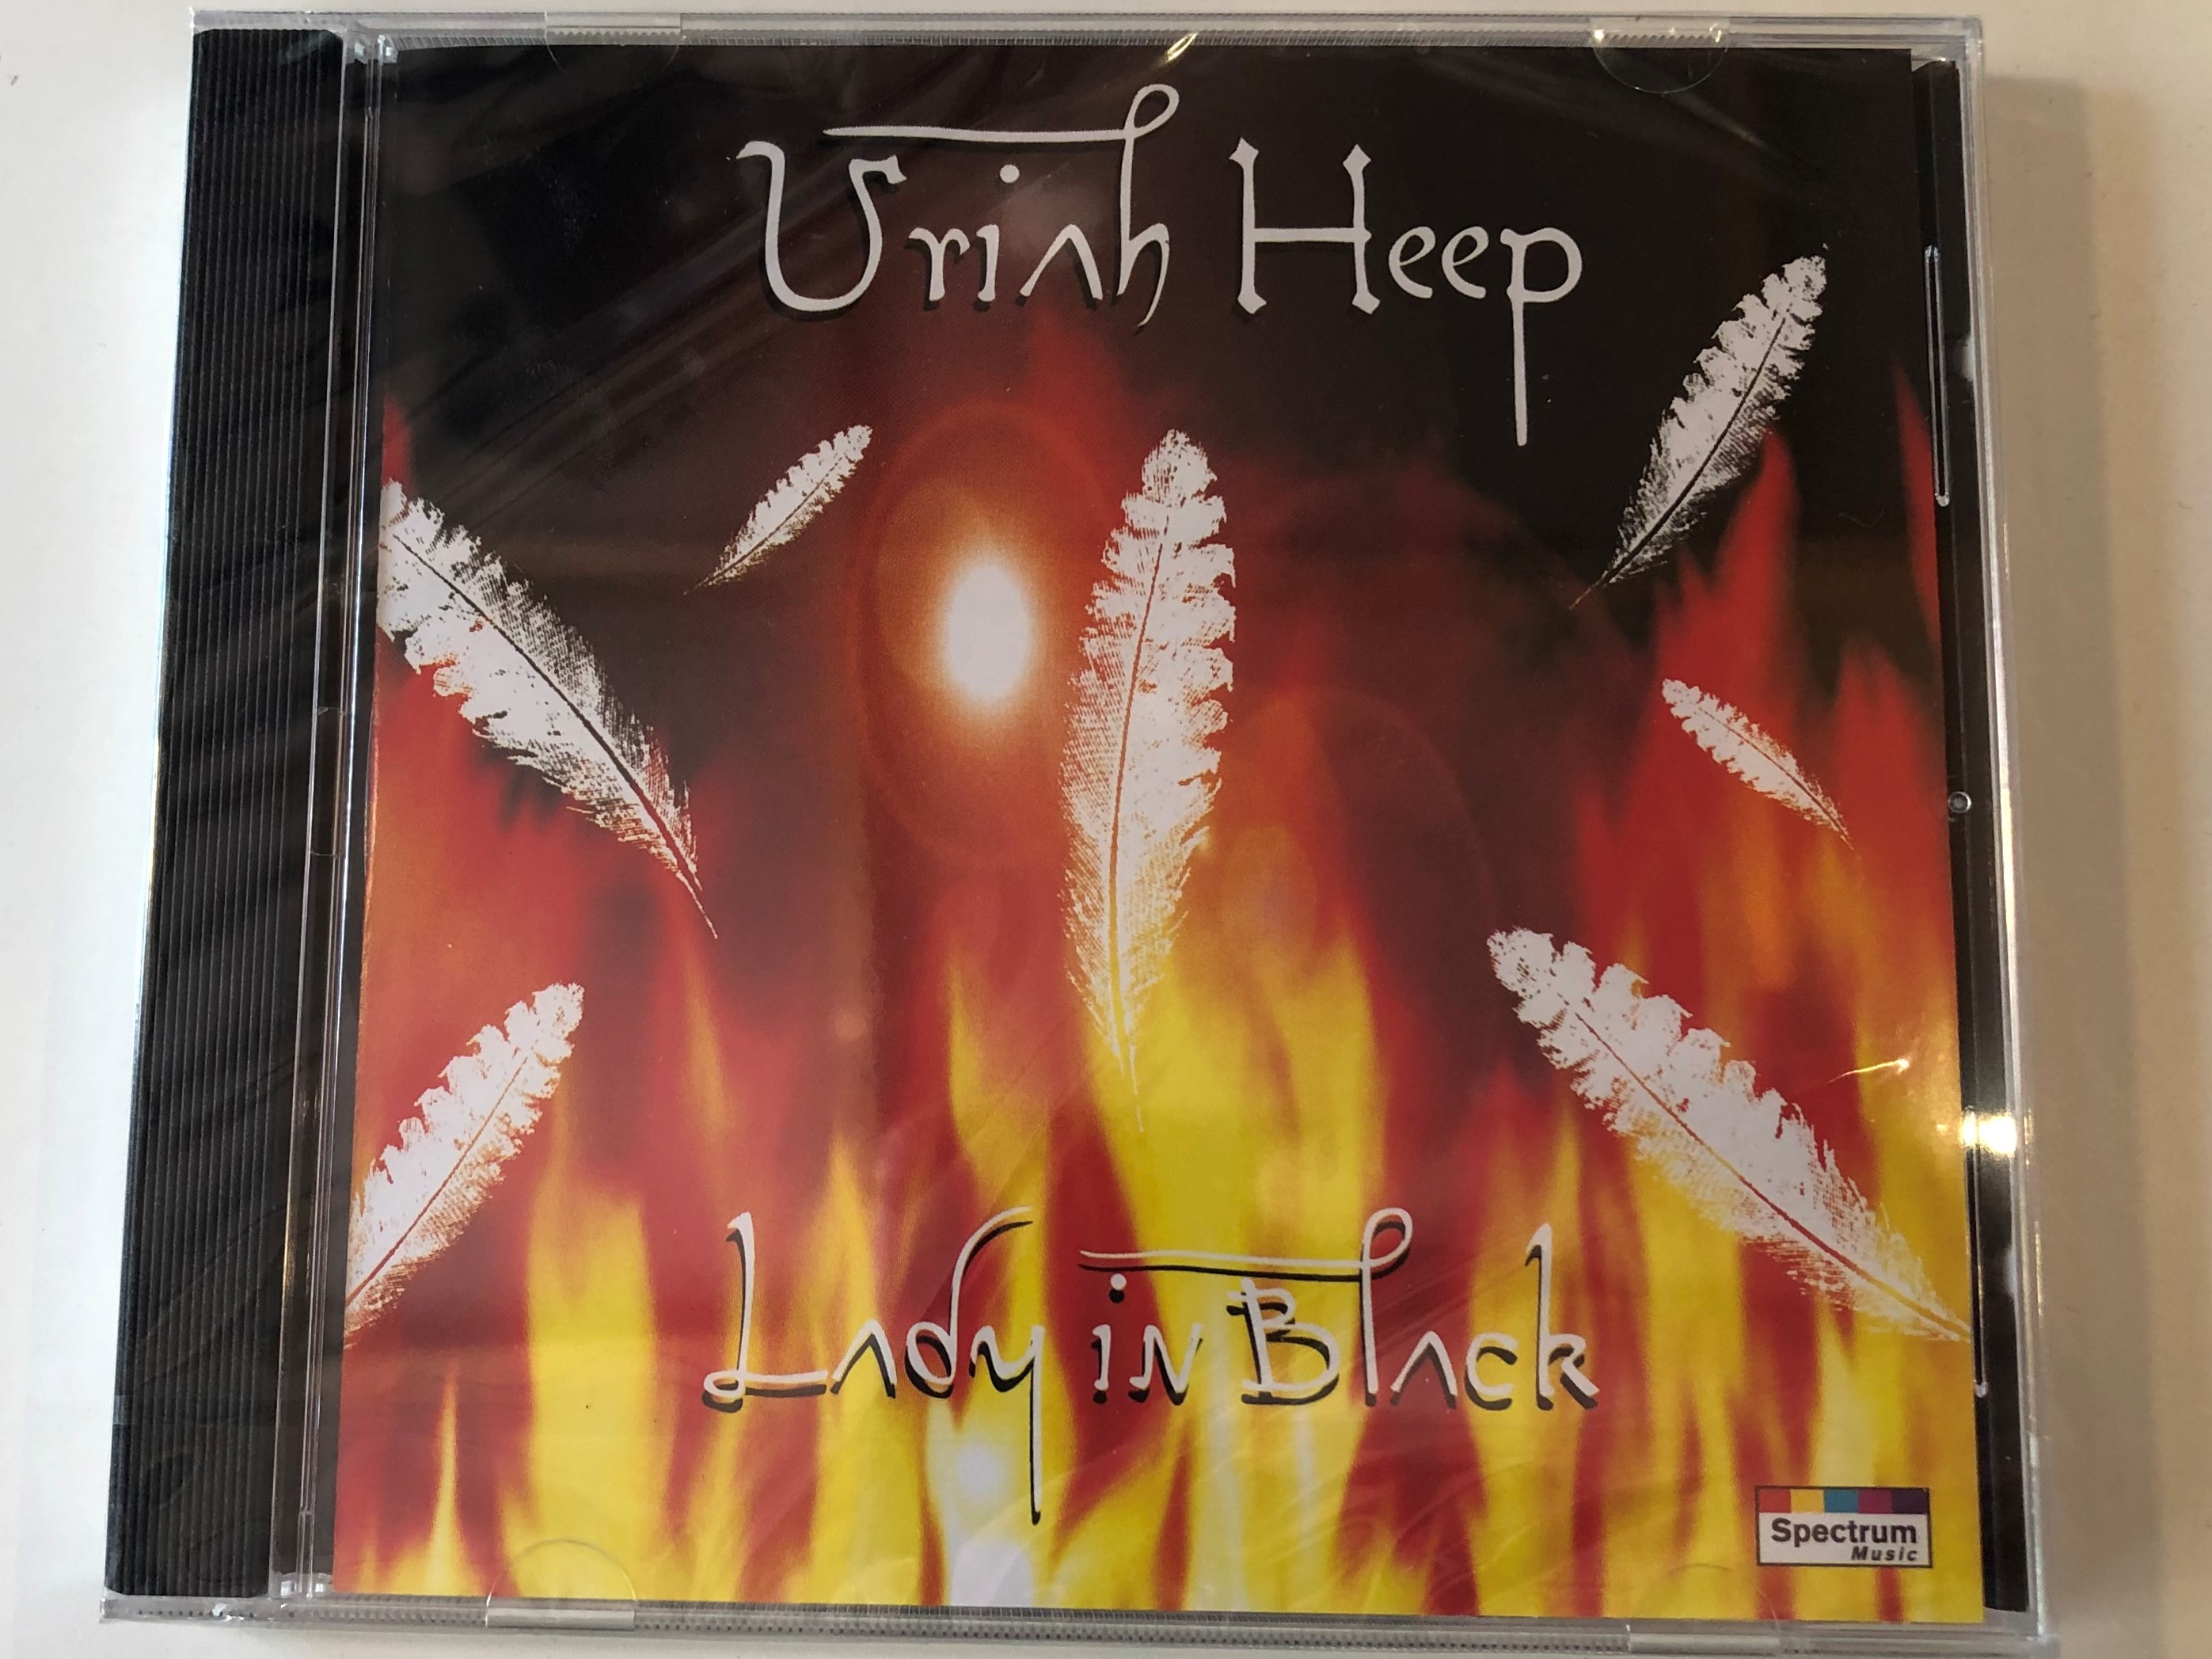 uriah-heep-lady-in-black-spectrum-music-audio-cd-731455073027-1-.jpg